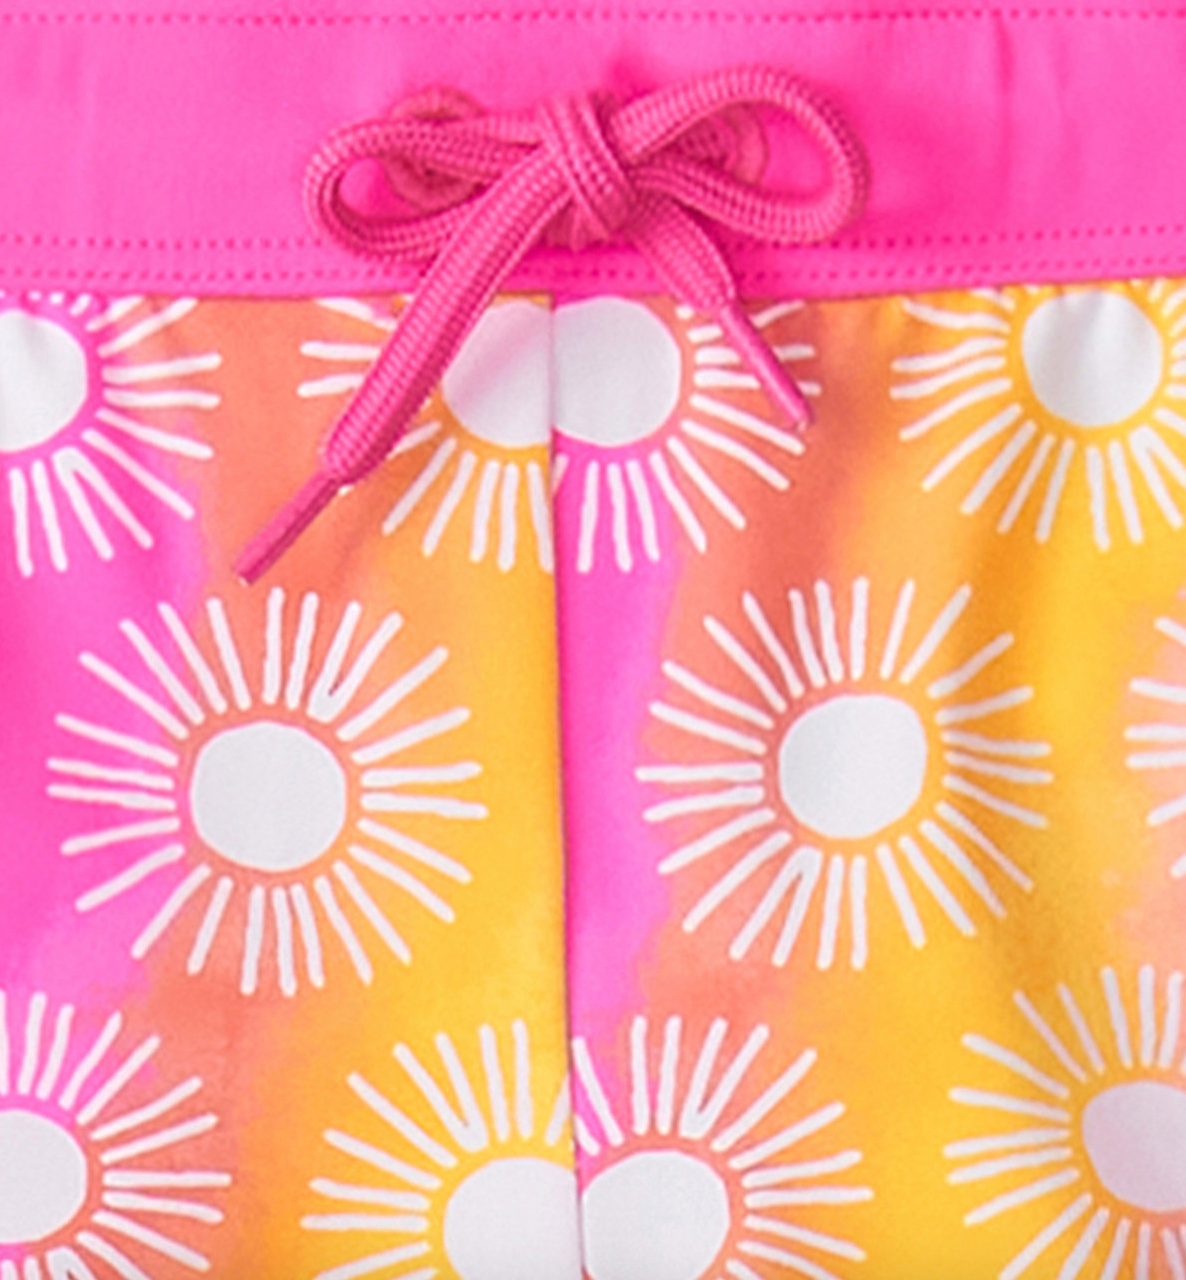 Neon Pink Sun Shine In Rashguard & Swim Shorts